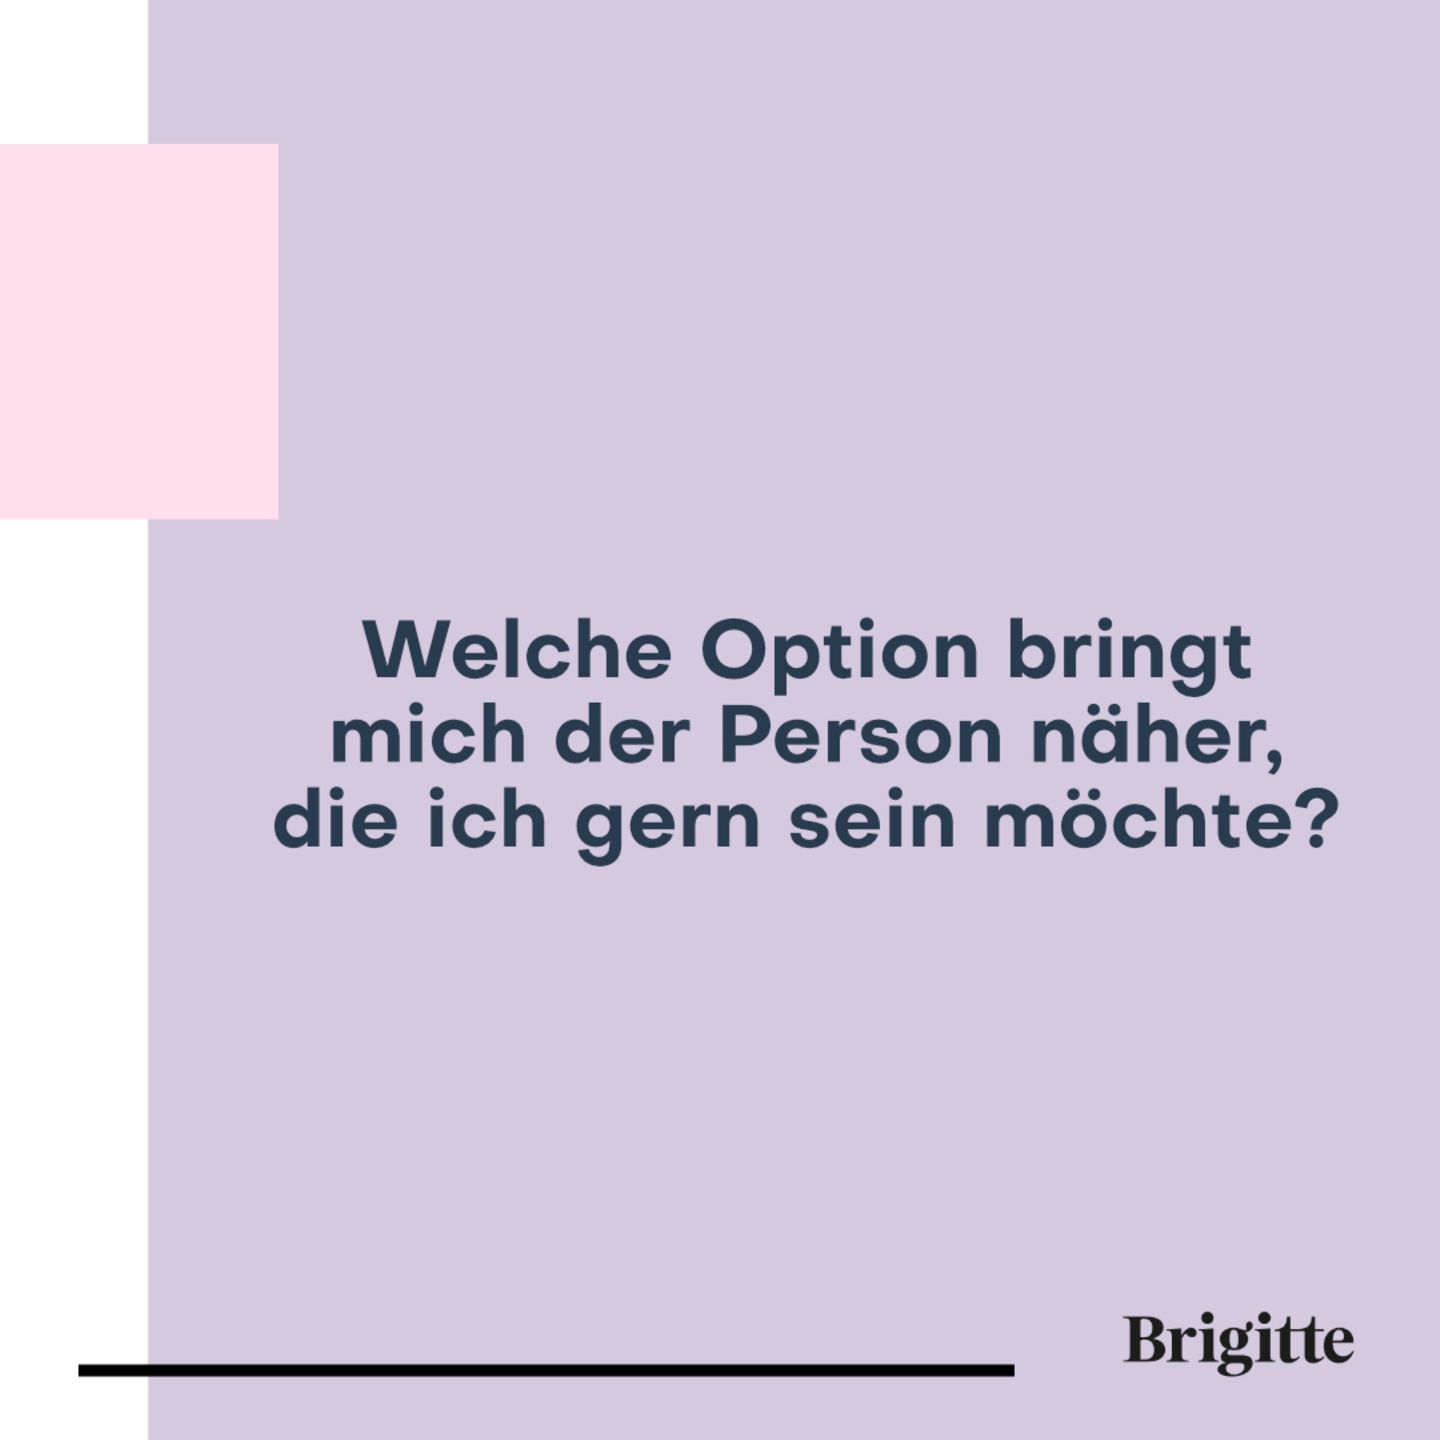 100 Fragen: Wichtige Entscheidungen treffen | BRIGITTE.de